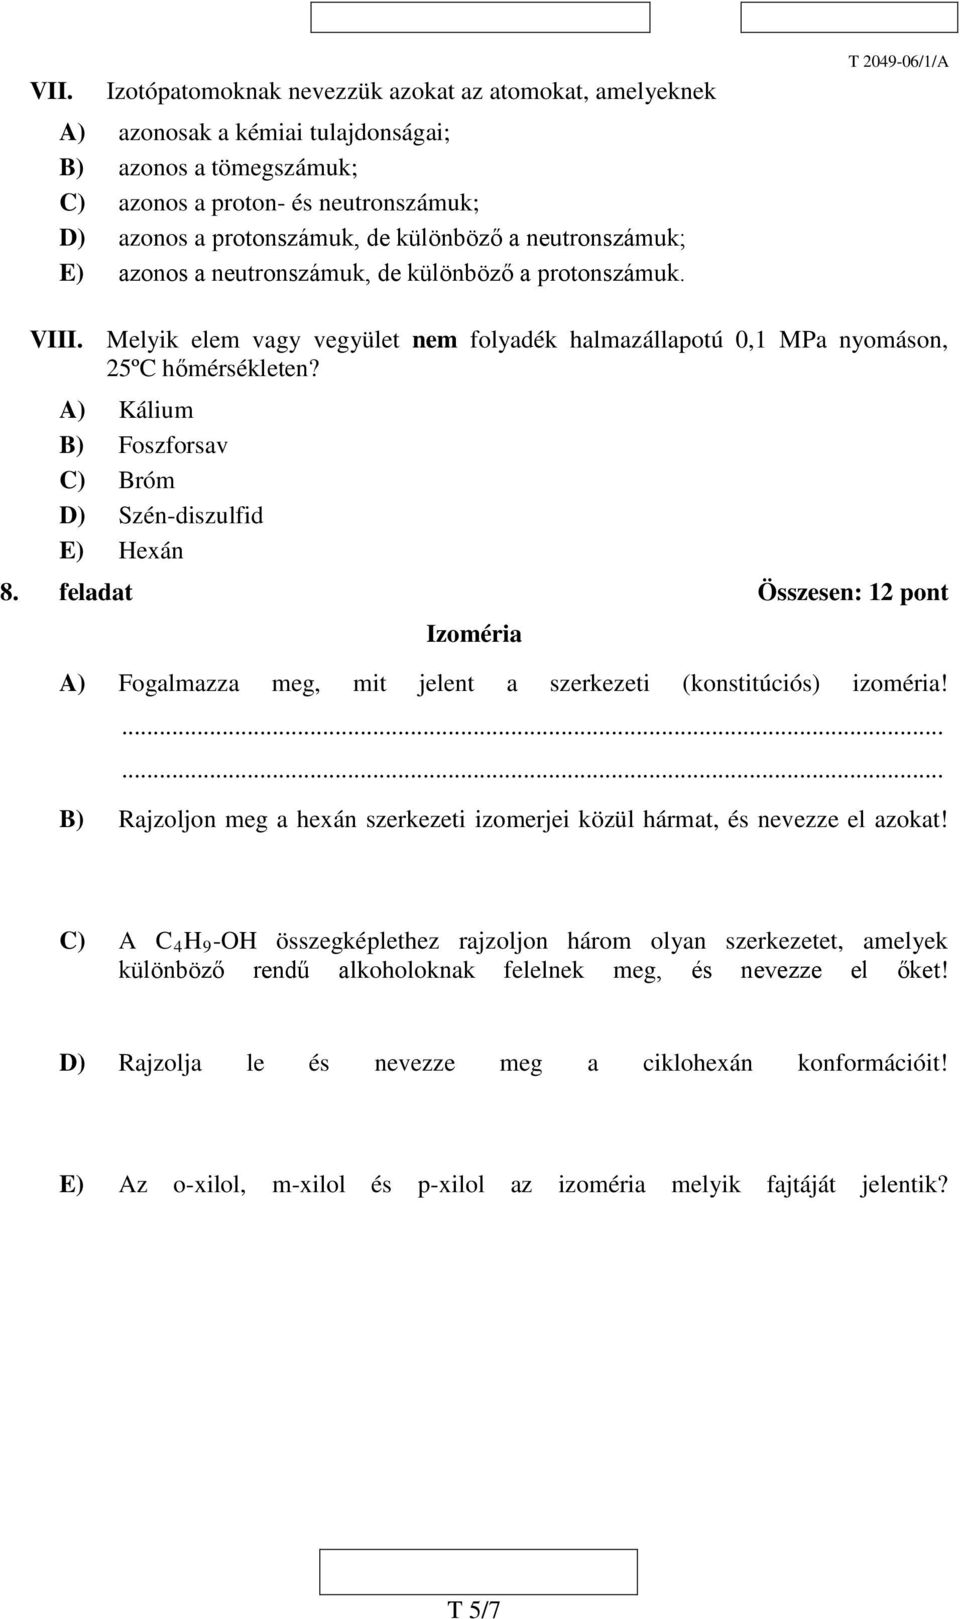 A) Kálium B) Foszforsav C) Bróm D) Szén-diszulfid E) Hexán 8. feladat Összesen: 12 pont Izoméria A) Fogalmazza meg, mit jelent a szerkezeti (konstitúciós) izoméria!